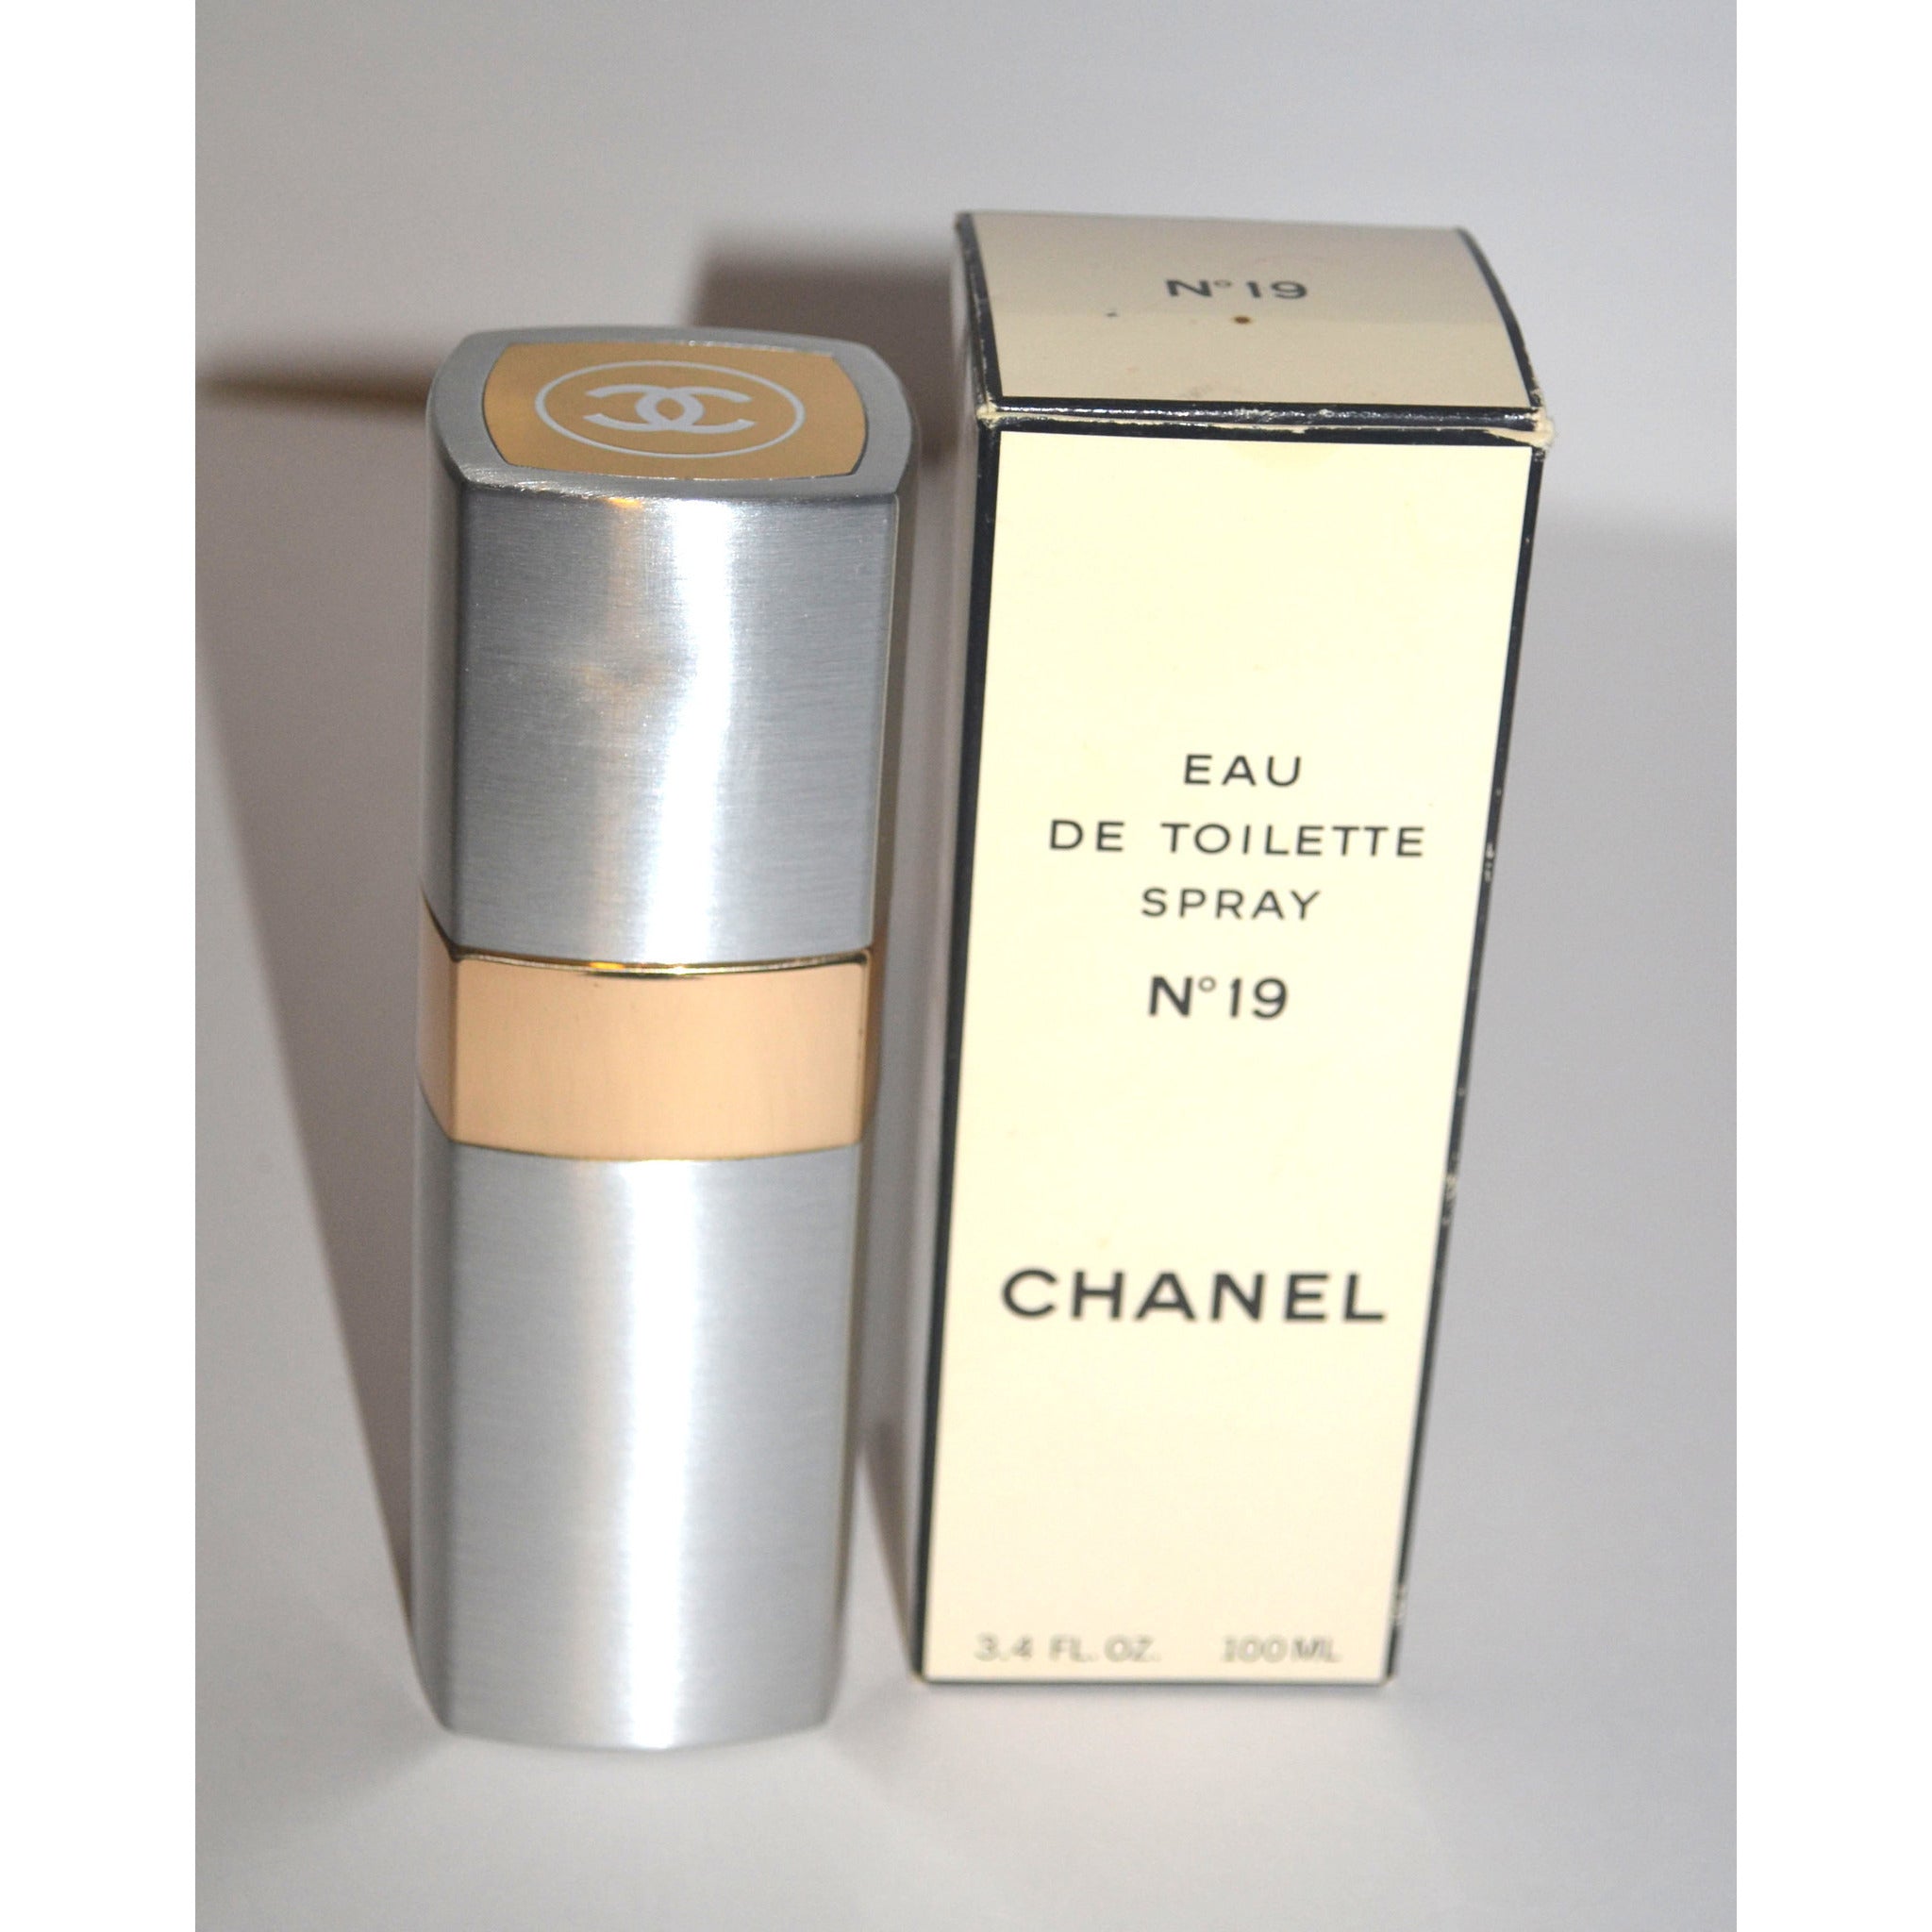 Chanel No.19 Eau de Parfum Spray For Women, 3.4 Oz 